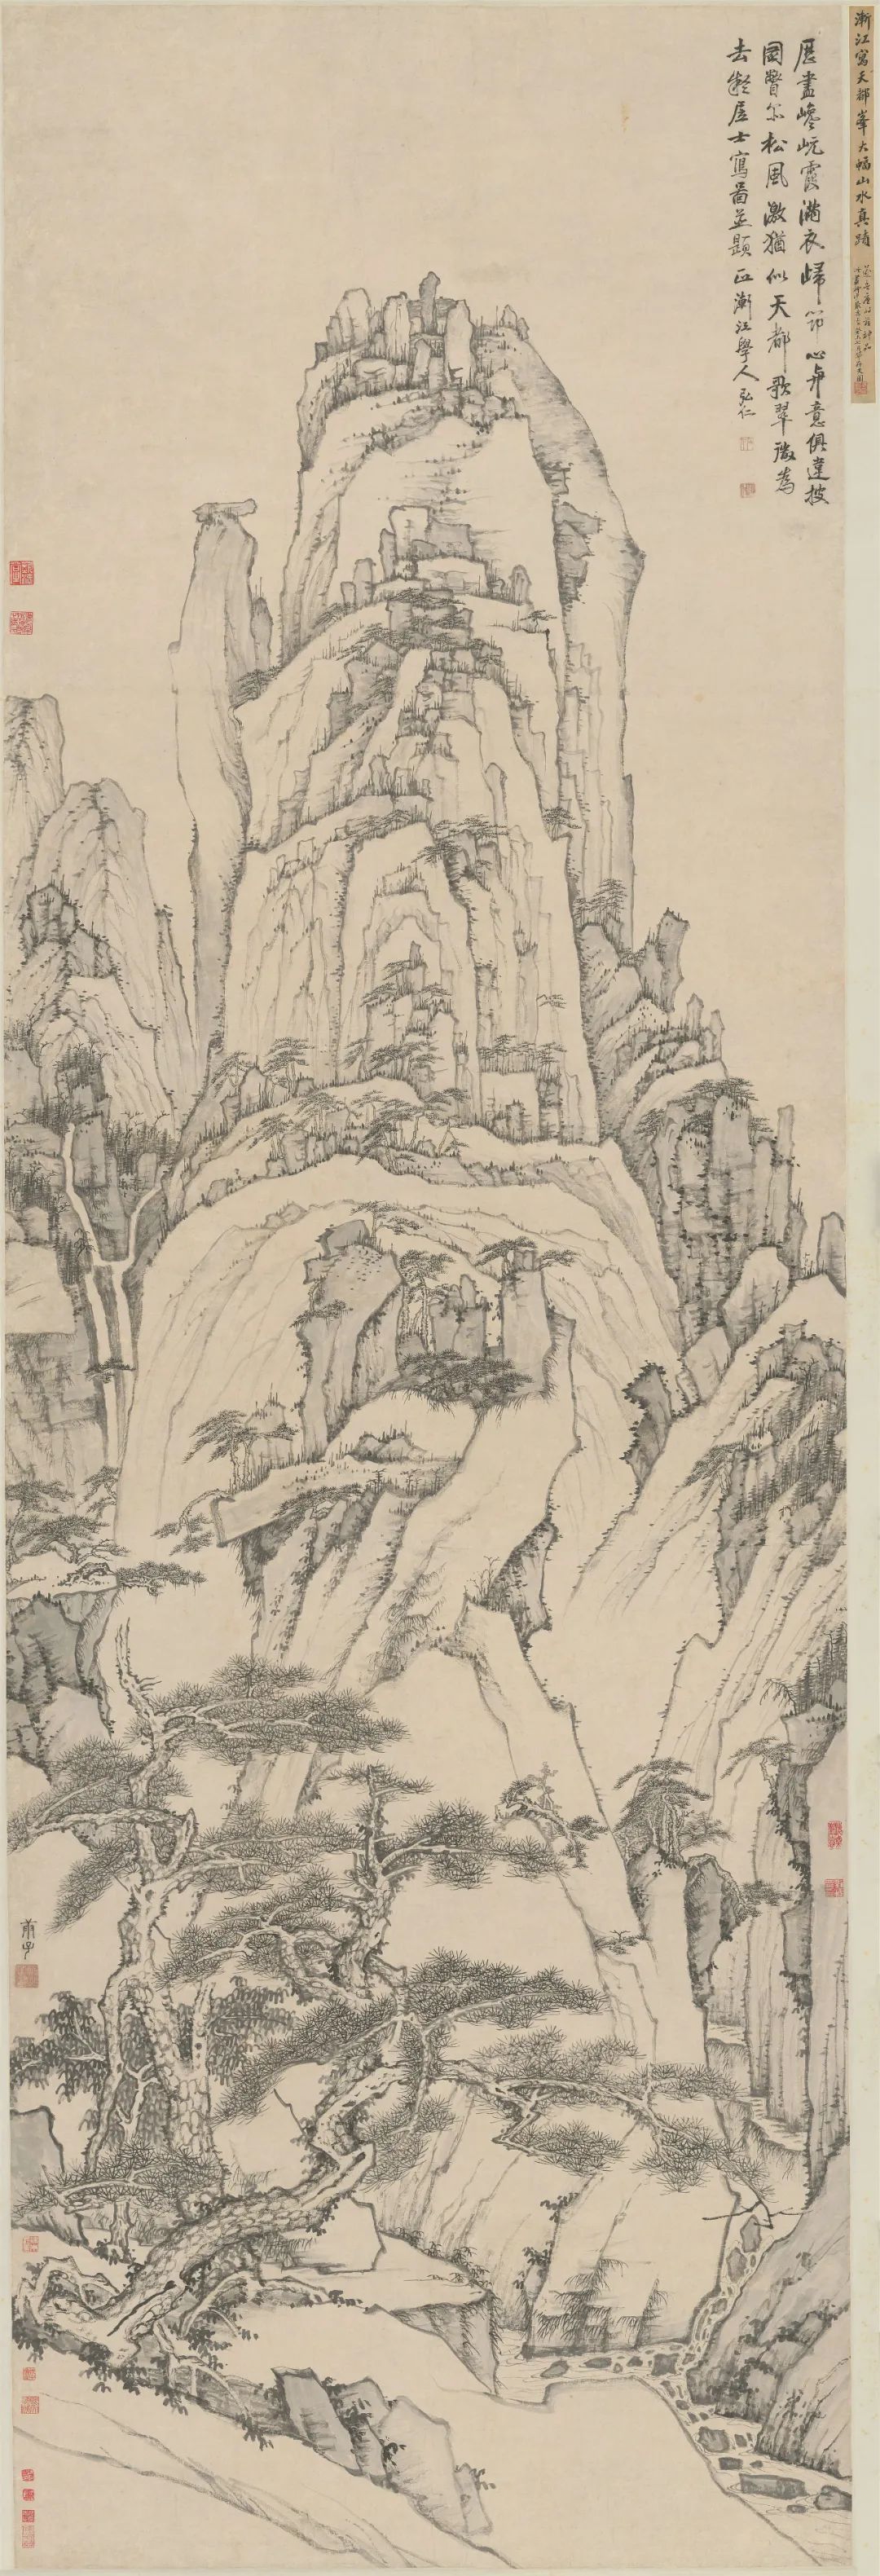 渐江 天都峰图轴 清顺治十七年(1660年)庚子 南京博物院藏